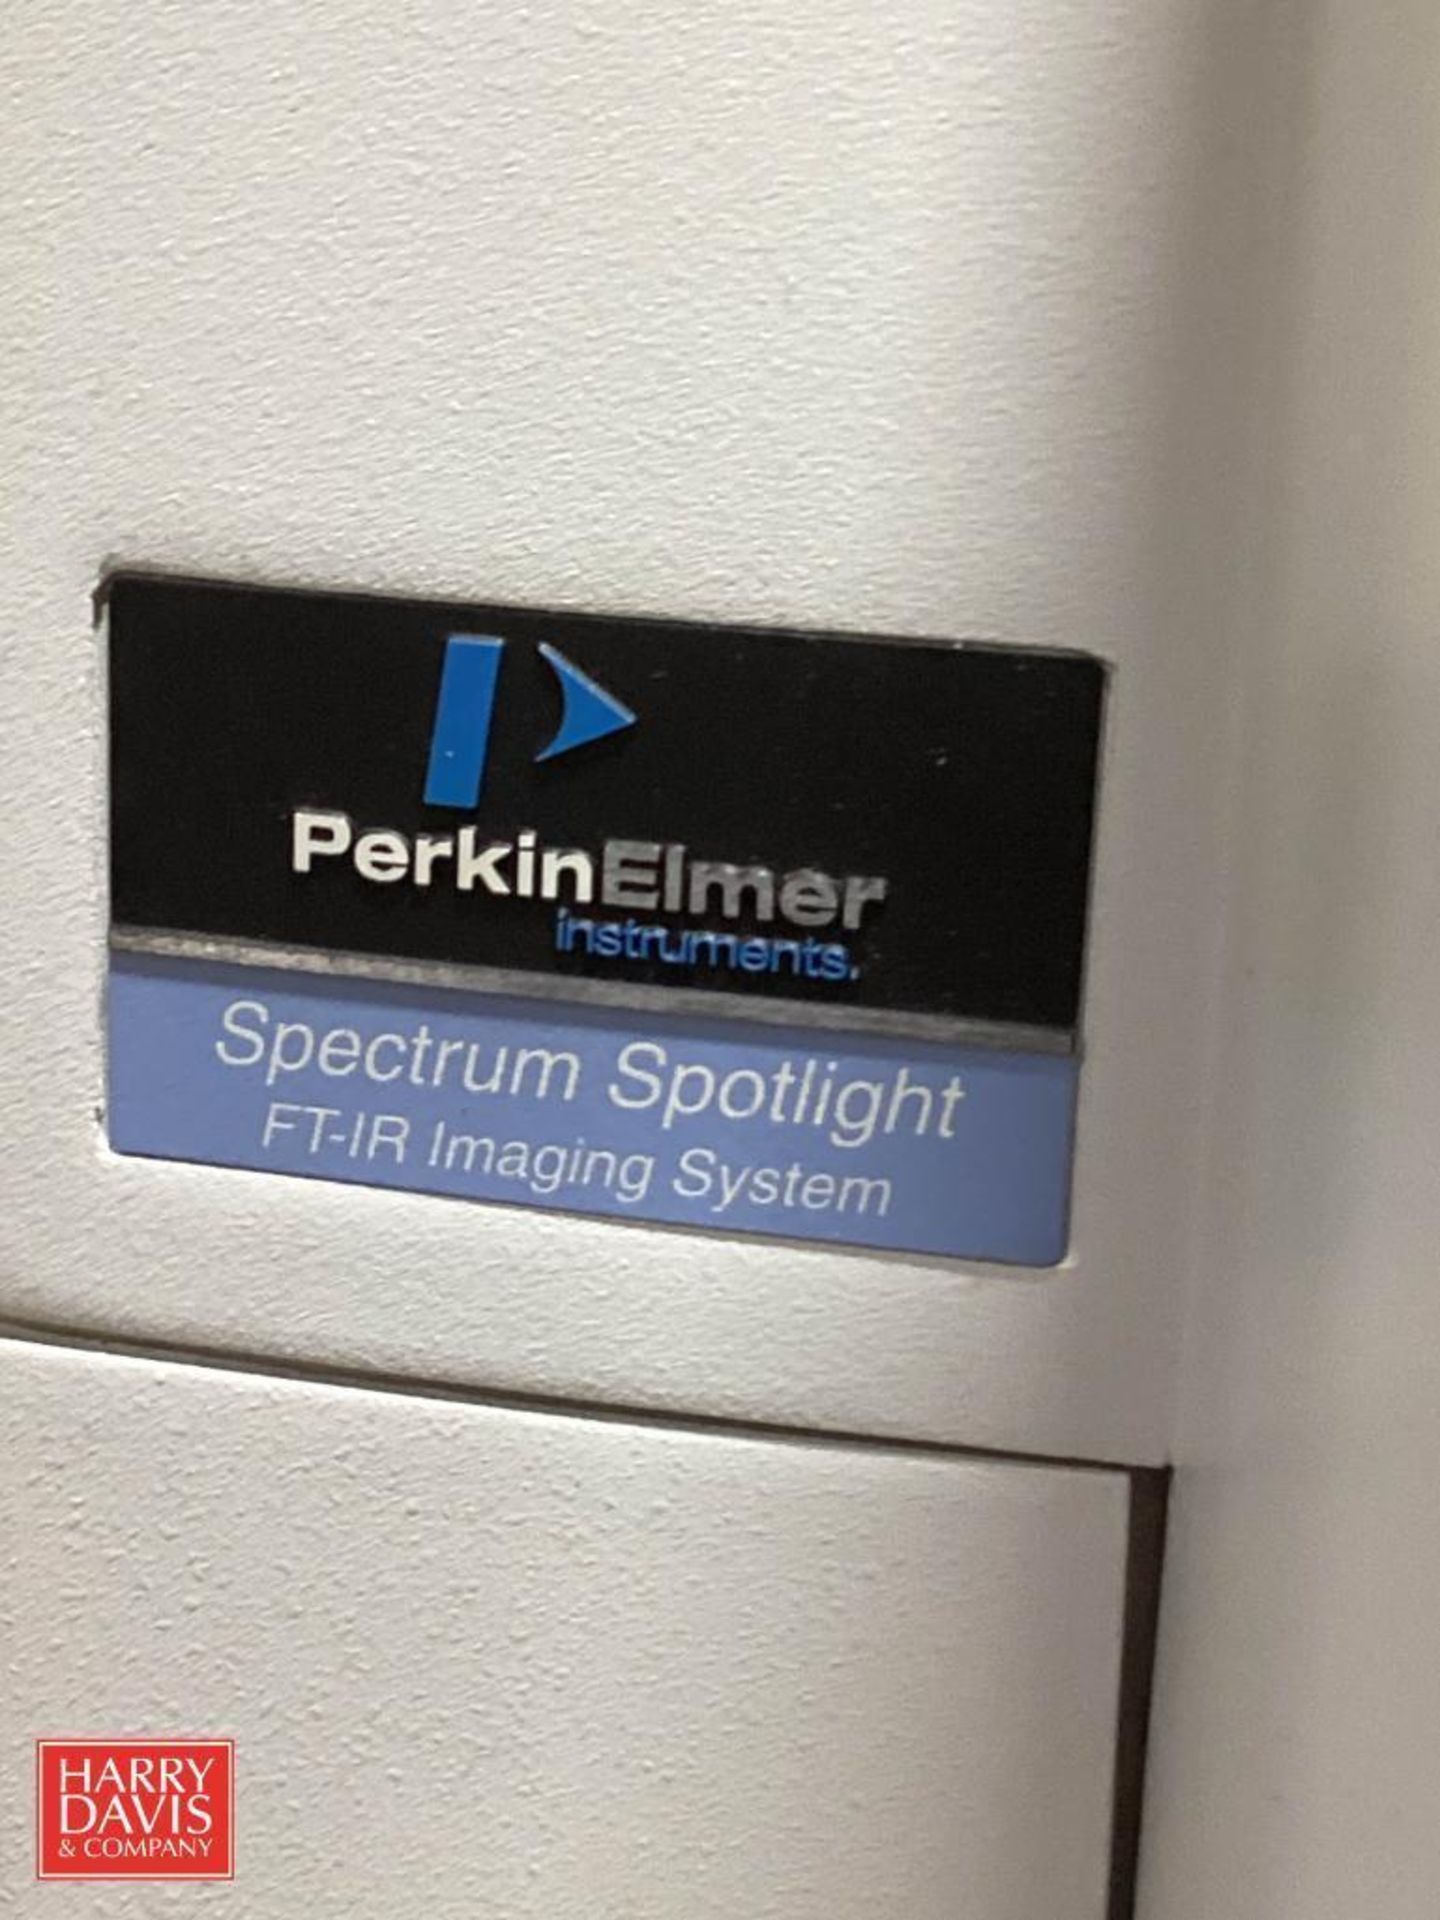 PerkinElmer Spectrum Spotlight FT-IR Imaging System - Image 3 of 3